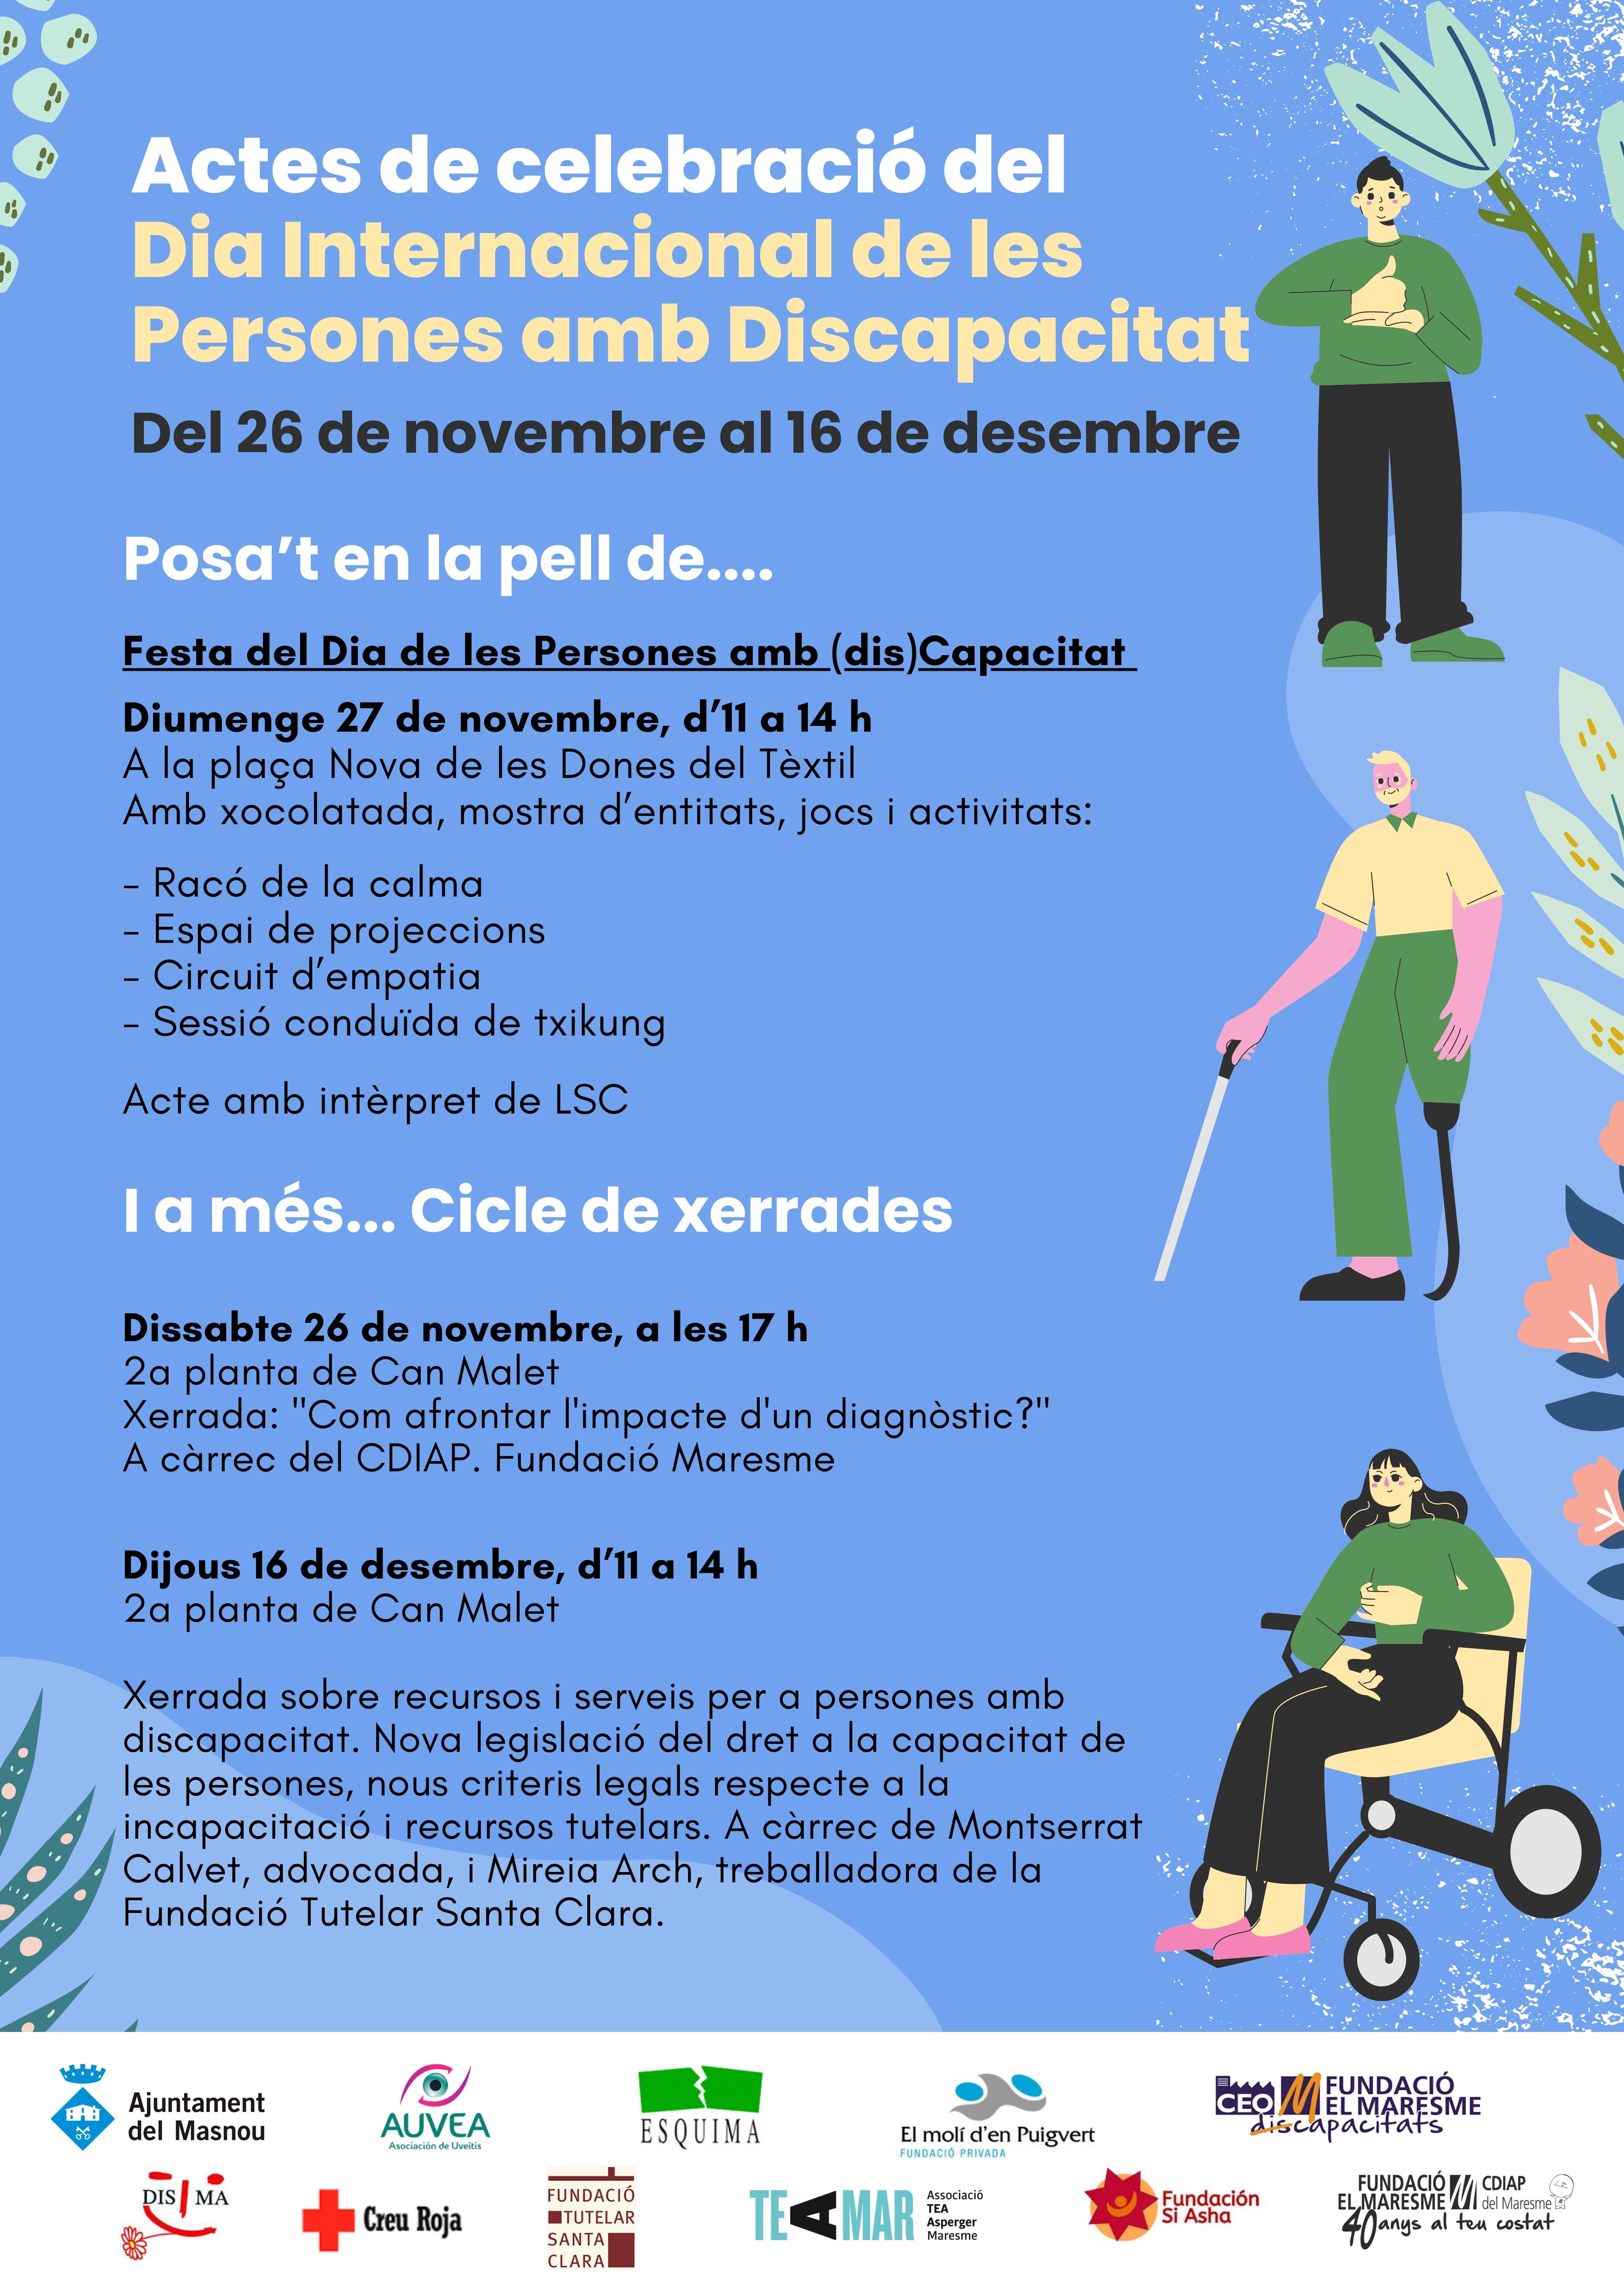 Activitat dins en el marc dels actes de celebració del Dia Internacional de les Persones amb Discapacitat 